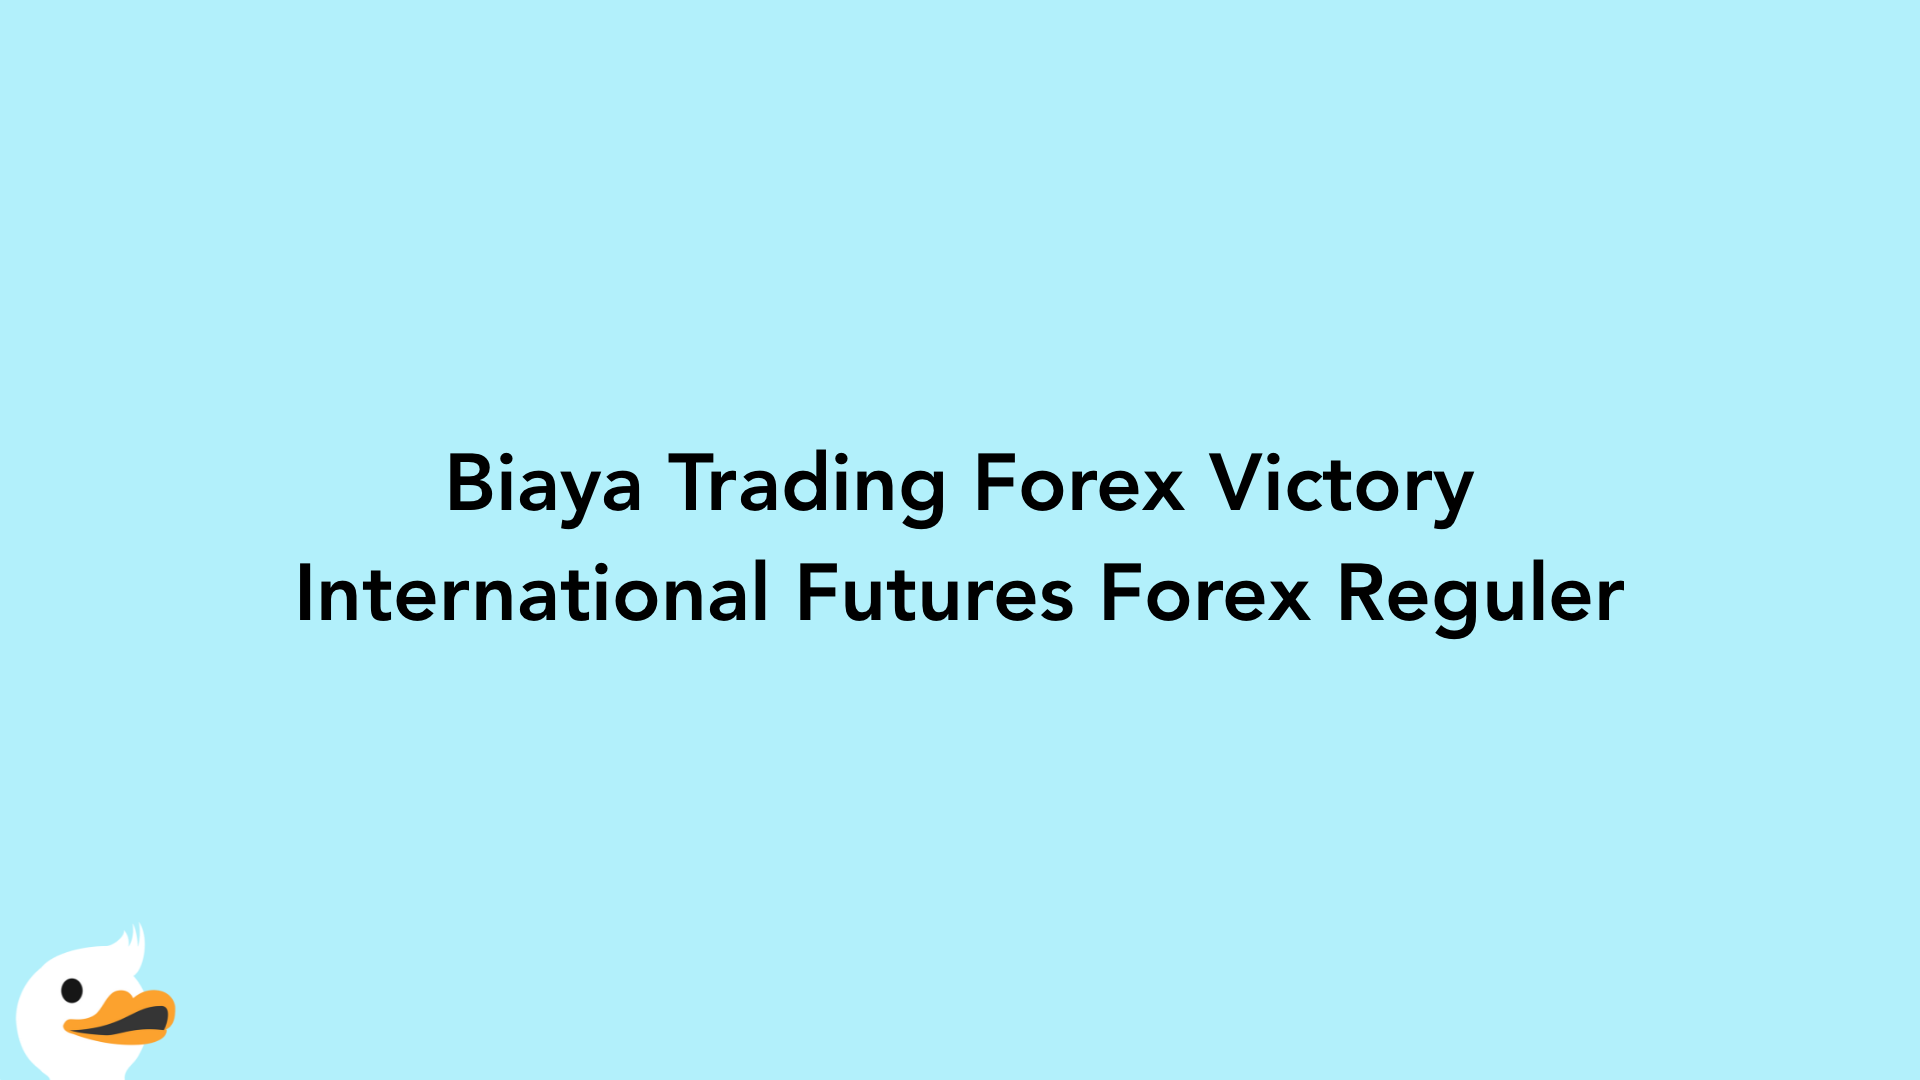 Biaya Trading Forex Victory International Futures Forex Reguler